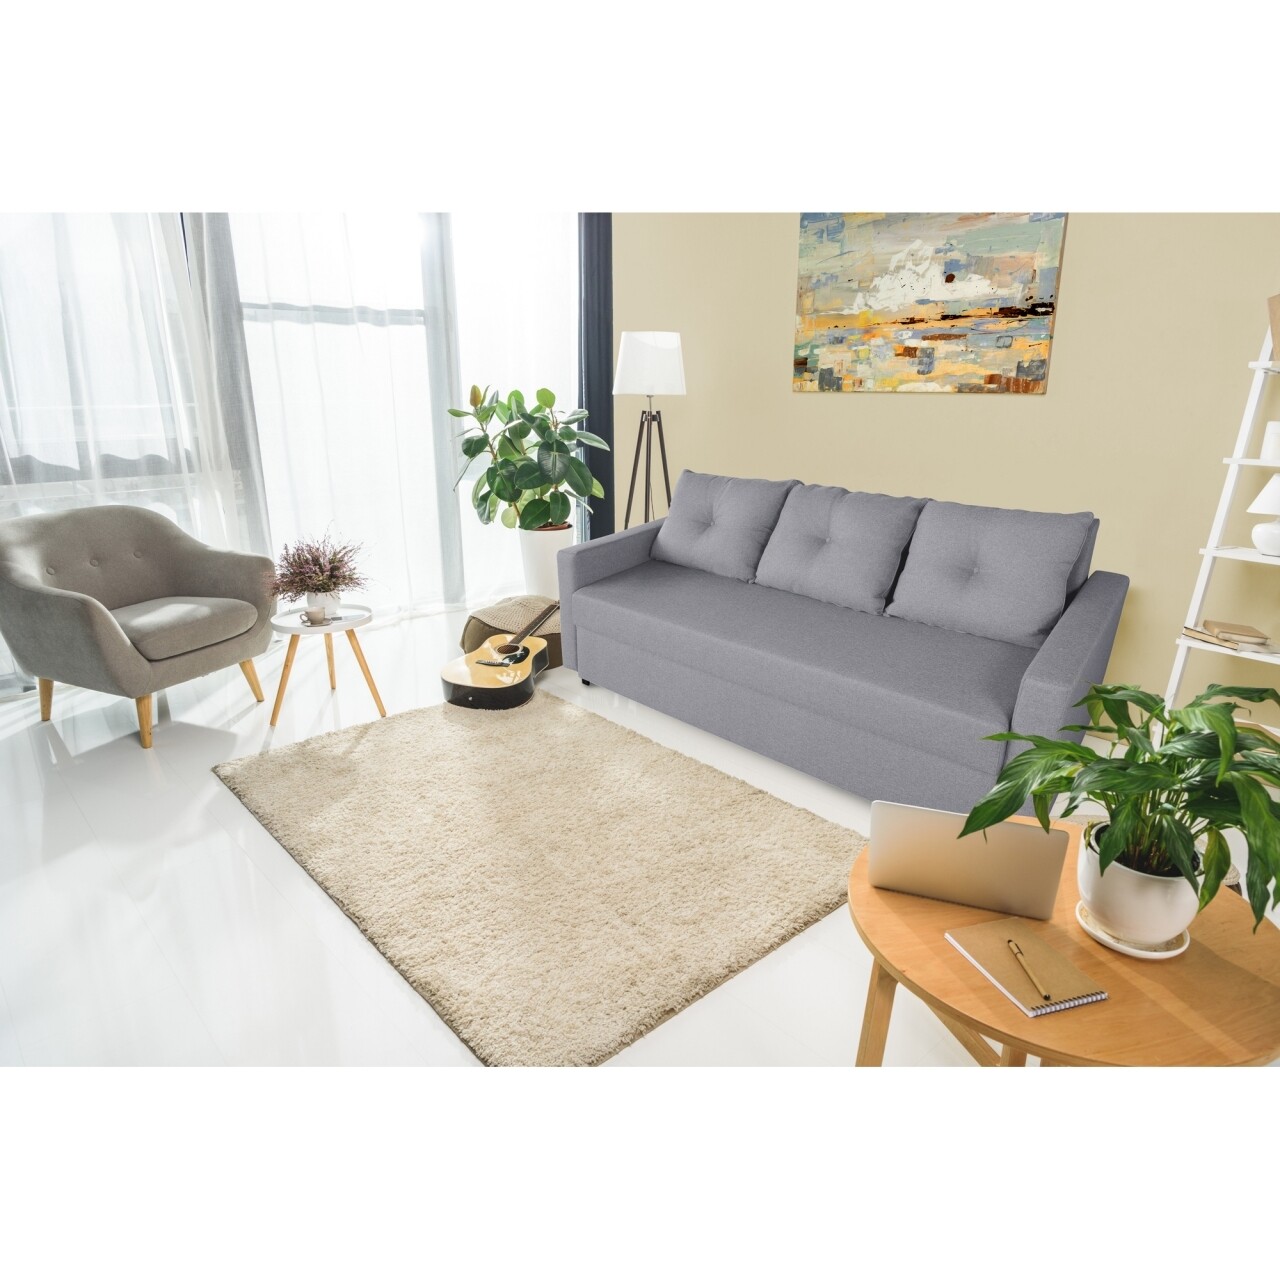 Bedora firenze lux kanapé grey 218x85x85cm + tárolóládával, szürke